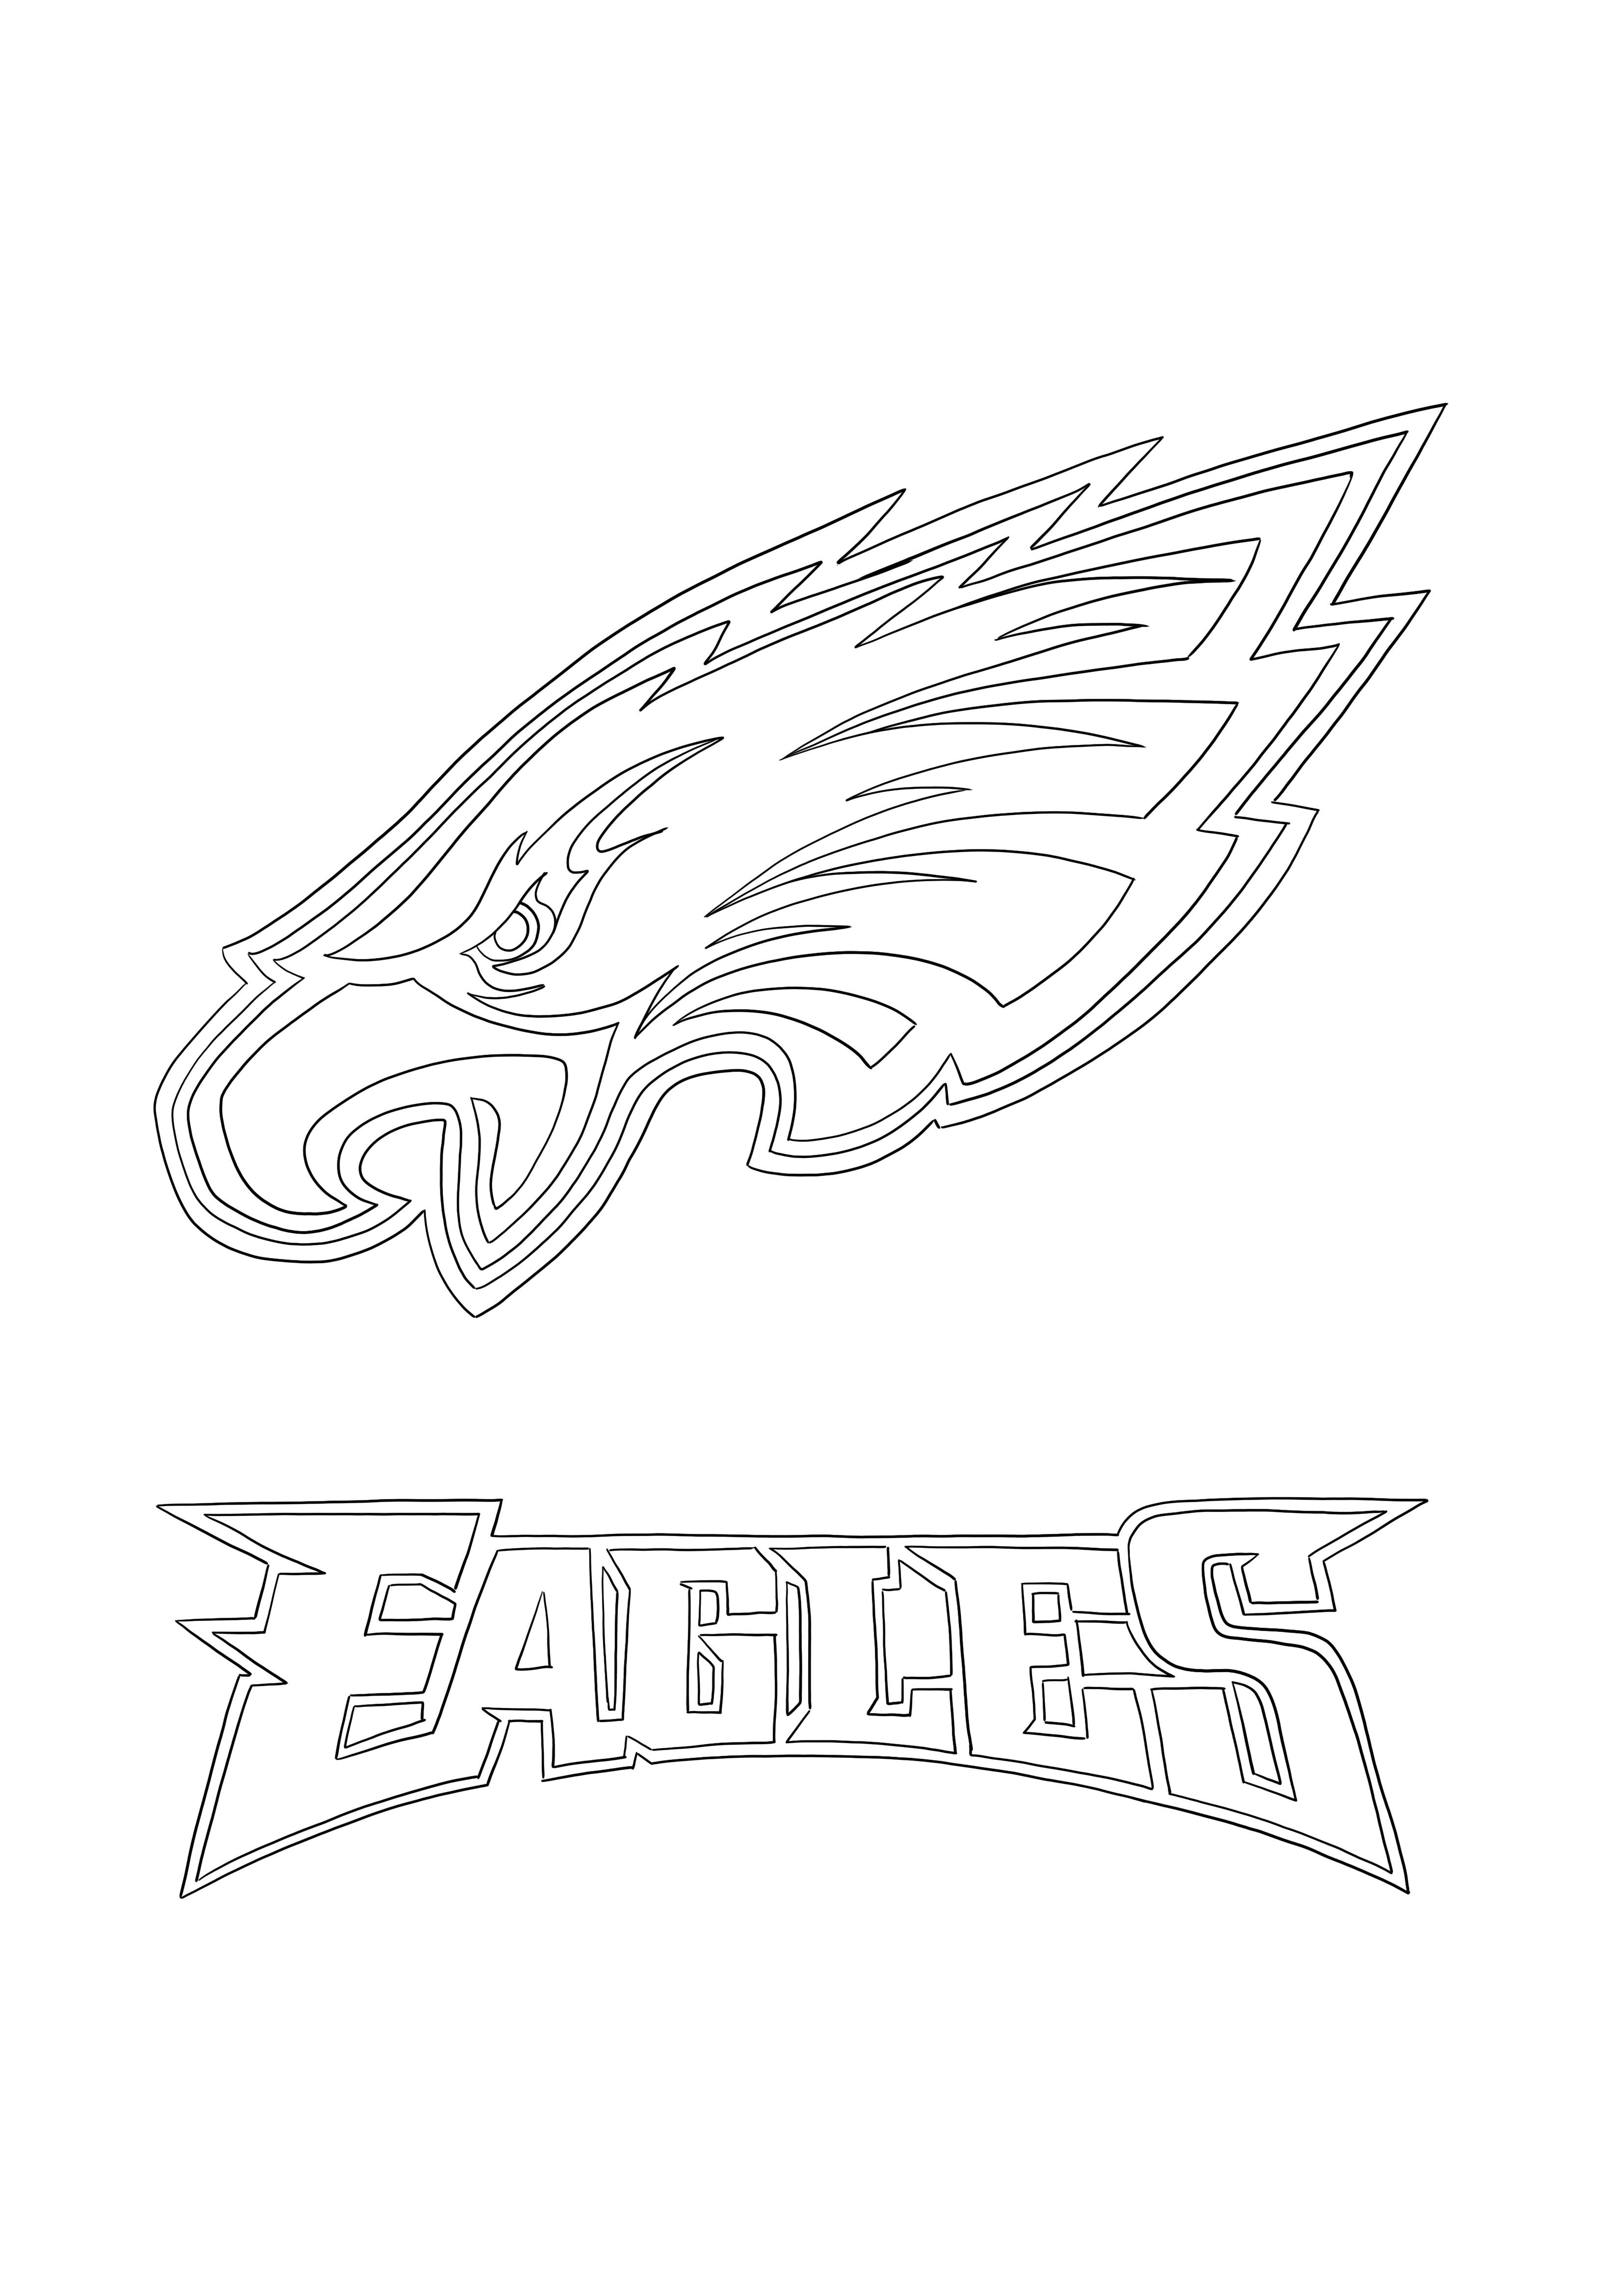 Logo Philadelphia Eagles pentru colorat și imprimat pentru copii